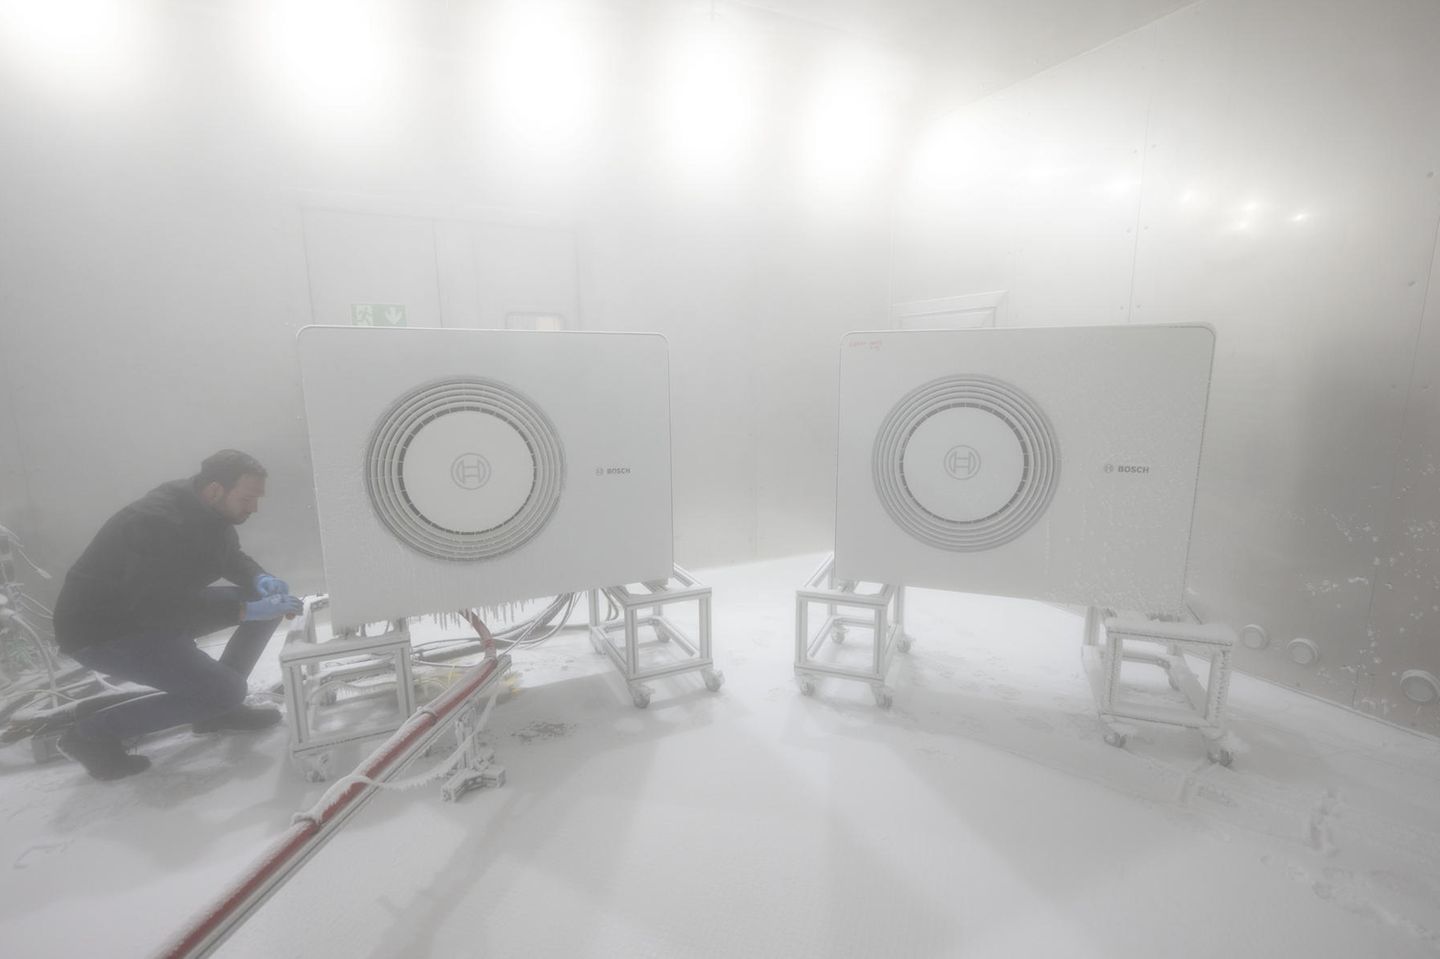 Ein Bosch-Mitarbeiter öffnet in einer Klimakammer das Gehäuse einer Wärmepumpe